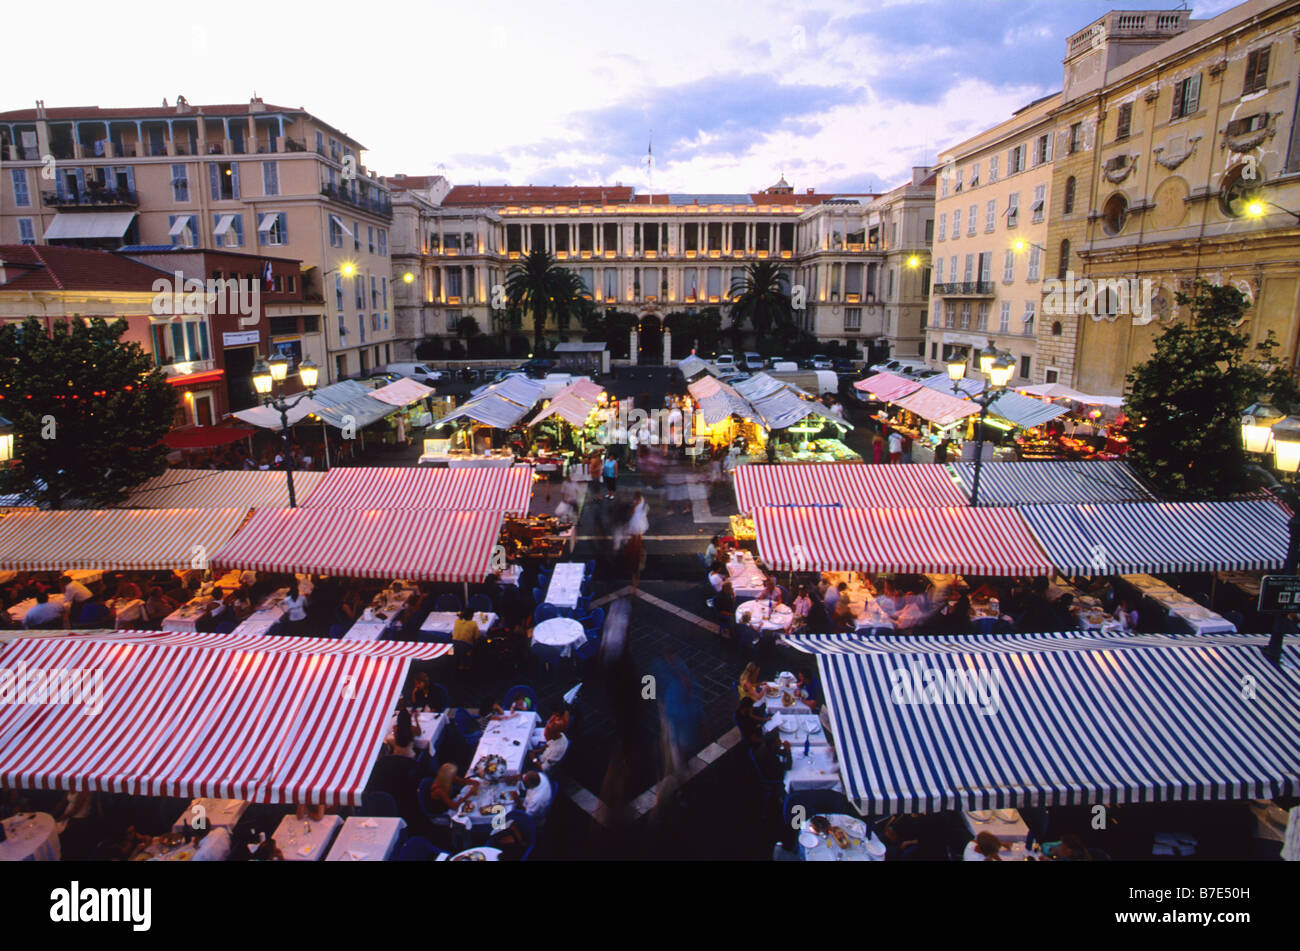 Restaurante al aire libre por la noche en el Cours Saleya mercado en el casco antiguo de Niza. Foto de stock